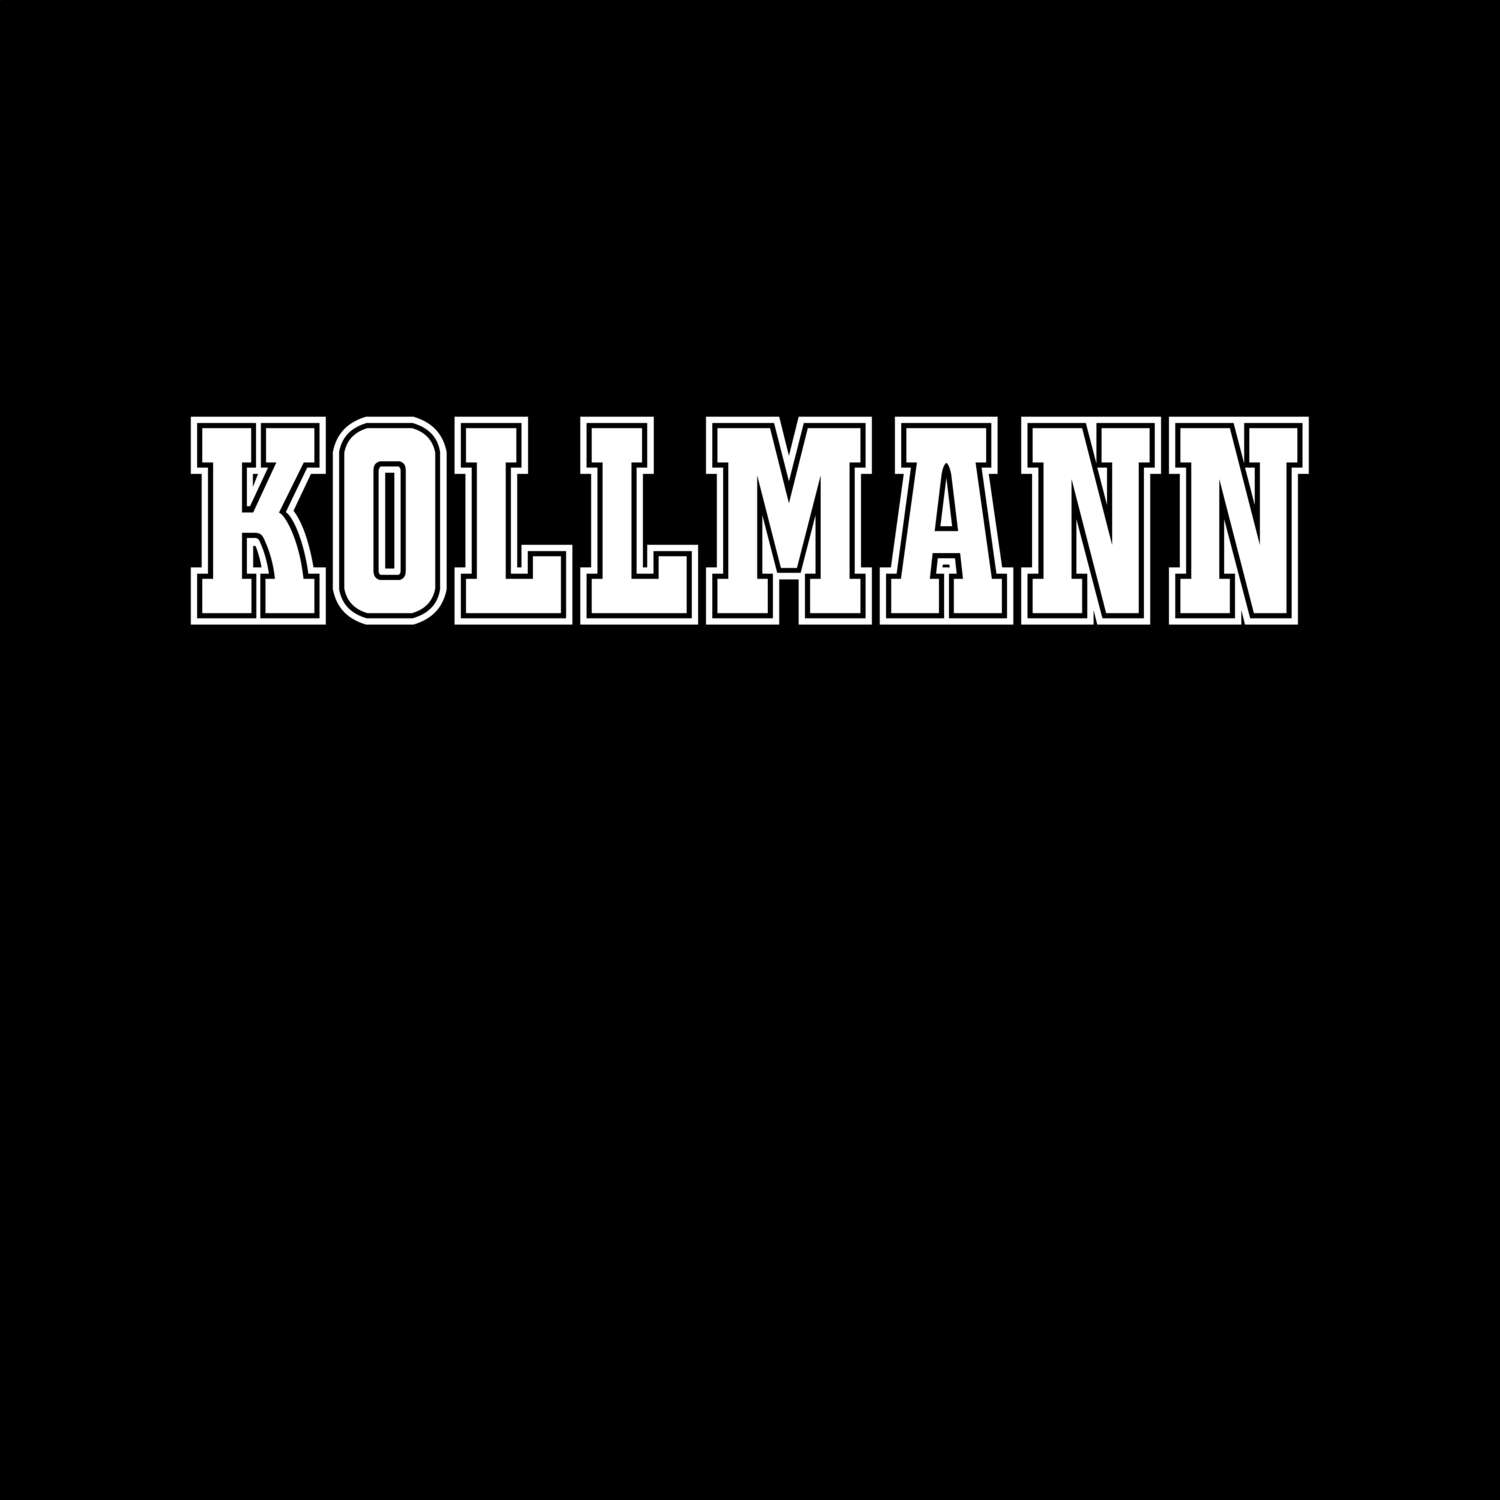 Kollmann T-Shirt »Classic«